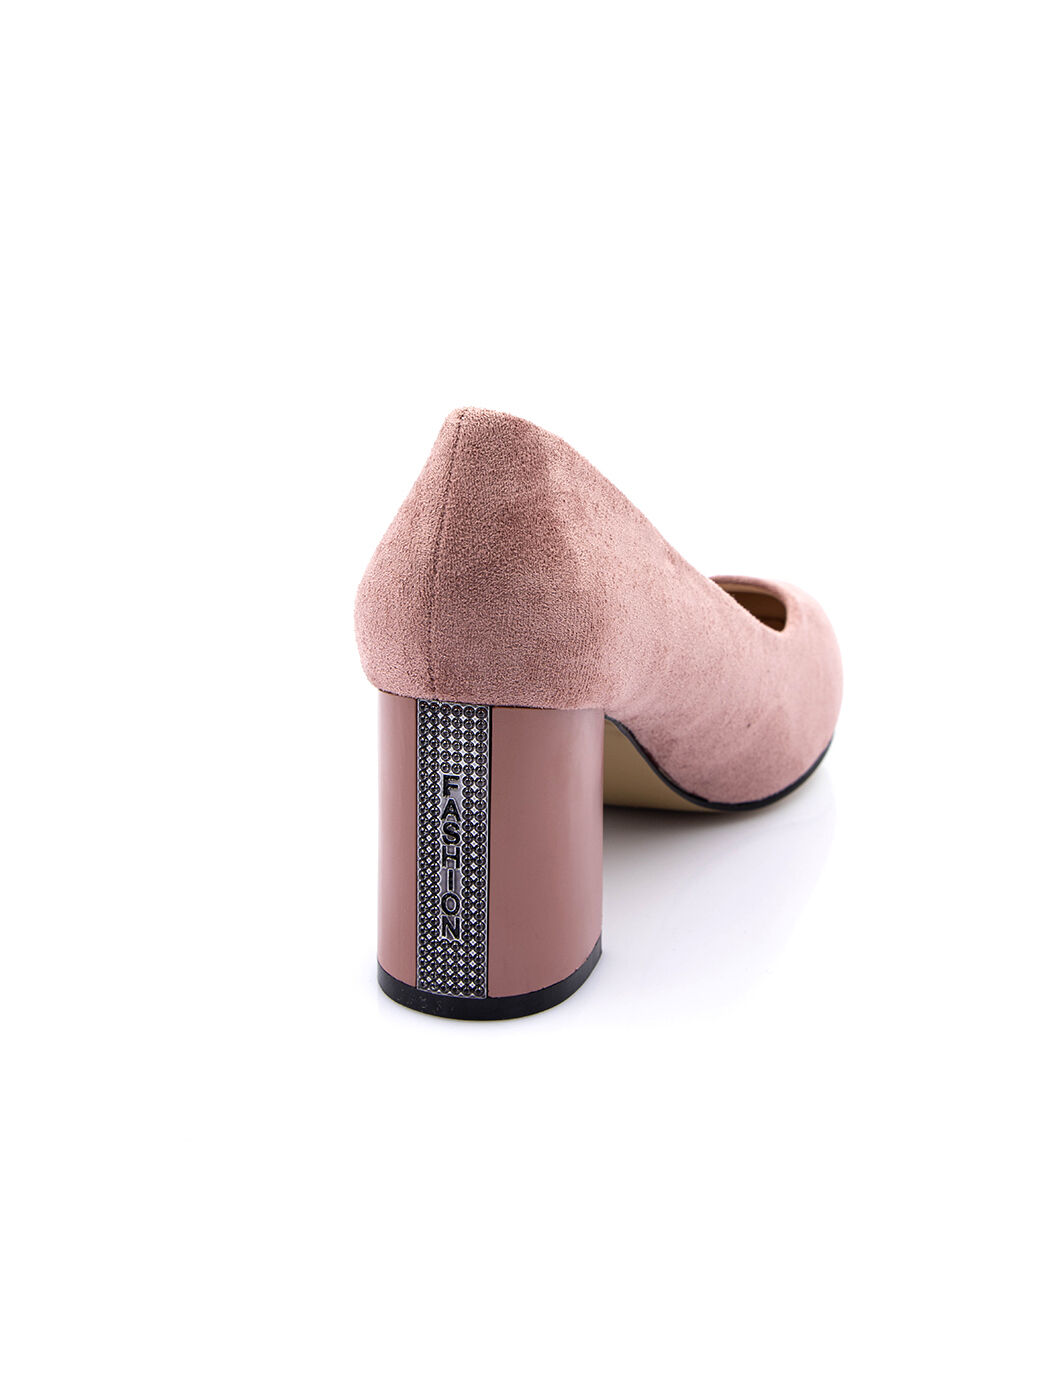 Туфли женские розовые экозамша каблук устойчивый демисезон от производителя 2M вид 1